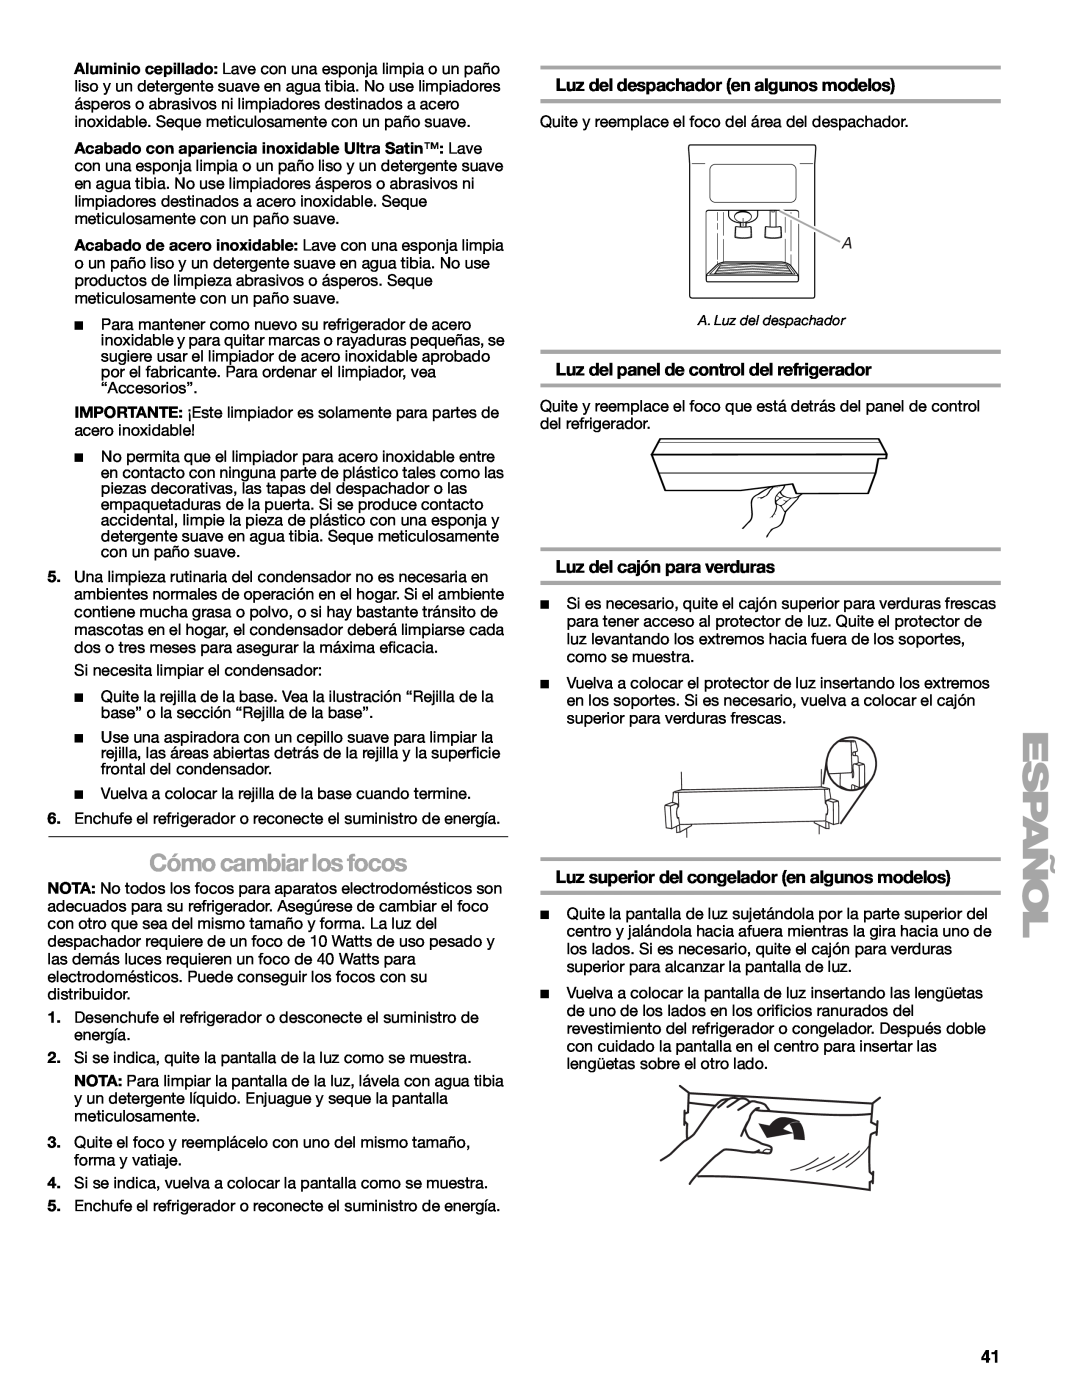 Sears T1KB2/T1RFKB2 manual Cómo cambiar los focos, Luz del despachador en algunos modelos, Luz del cajón para verduras 